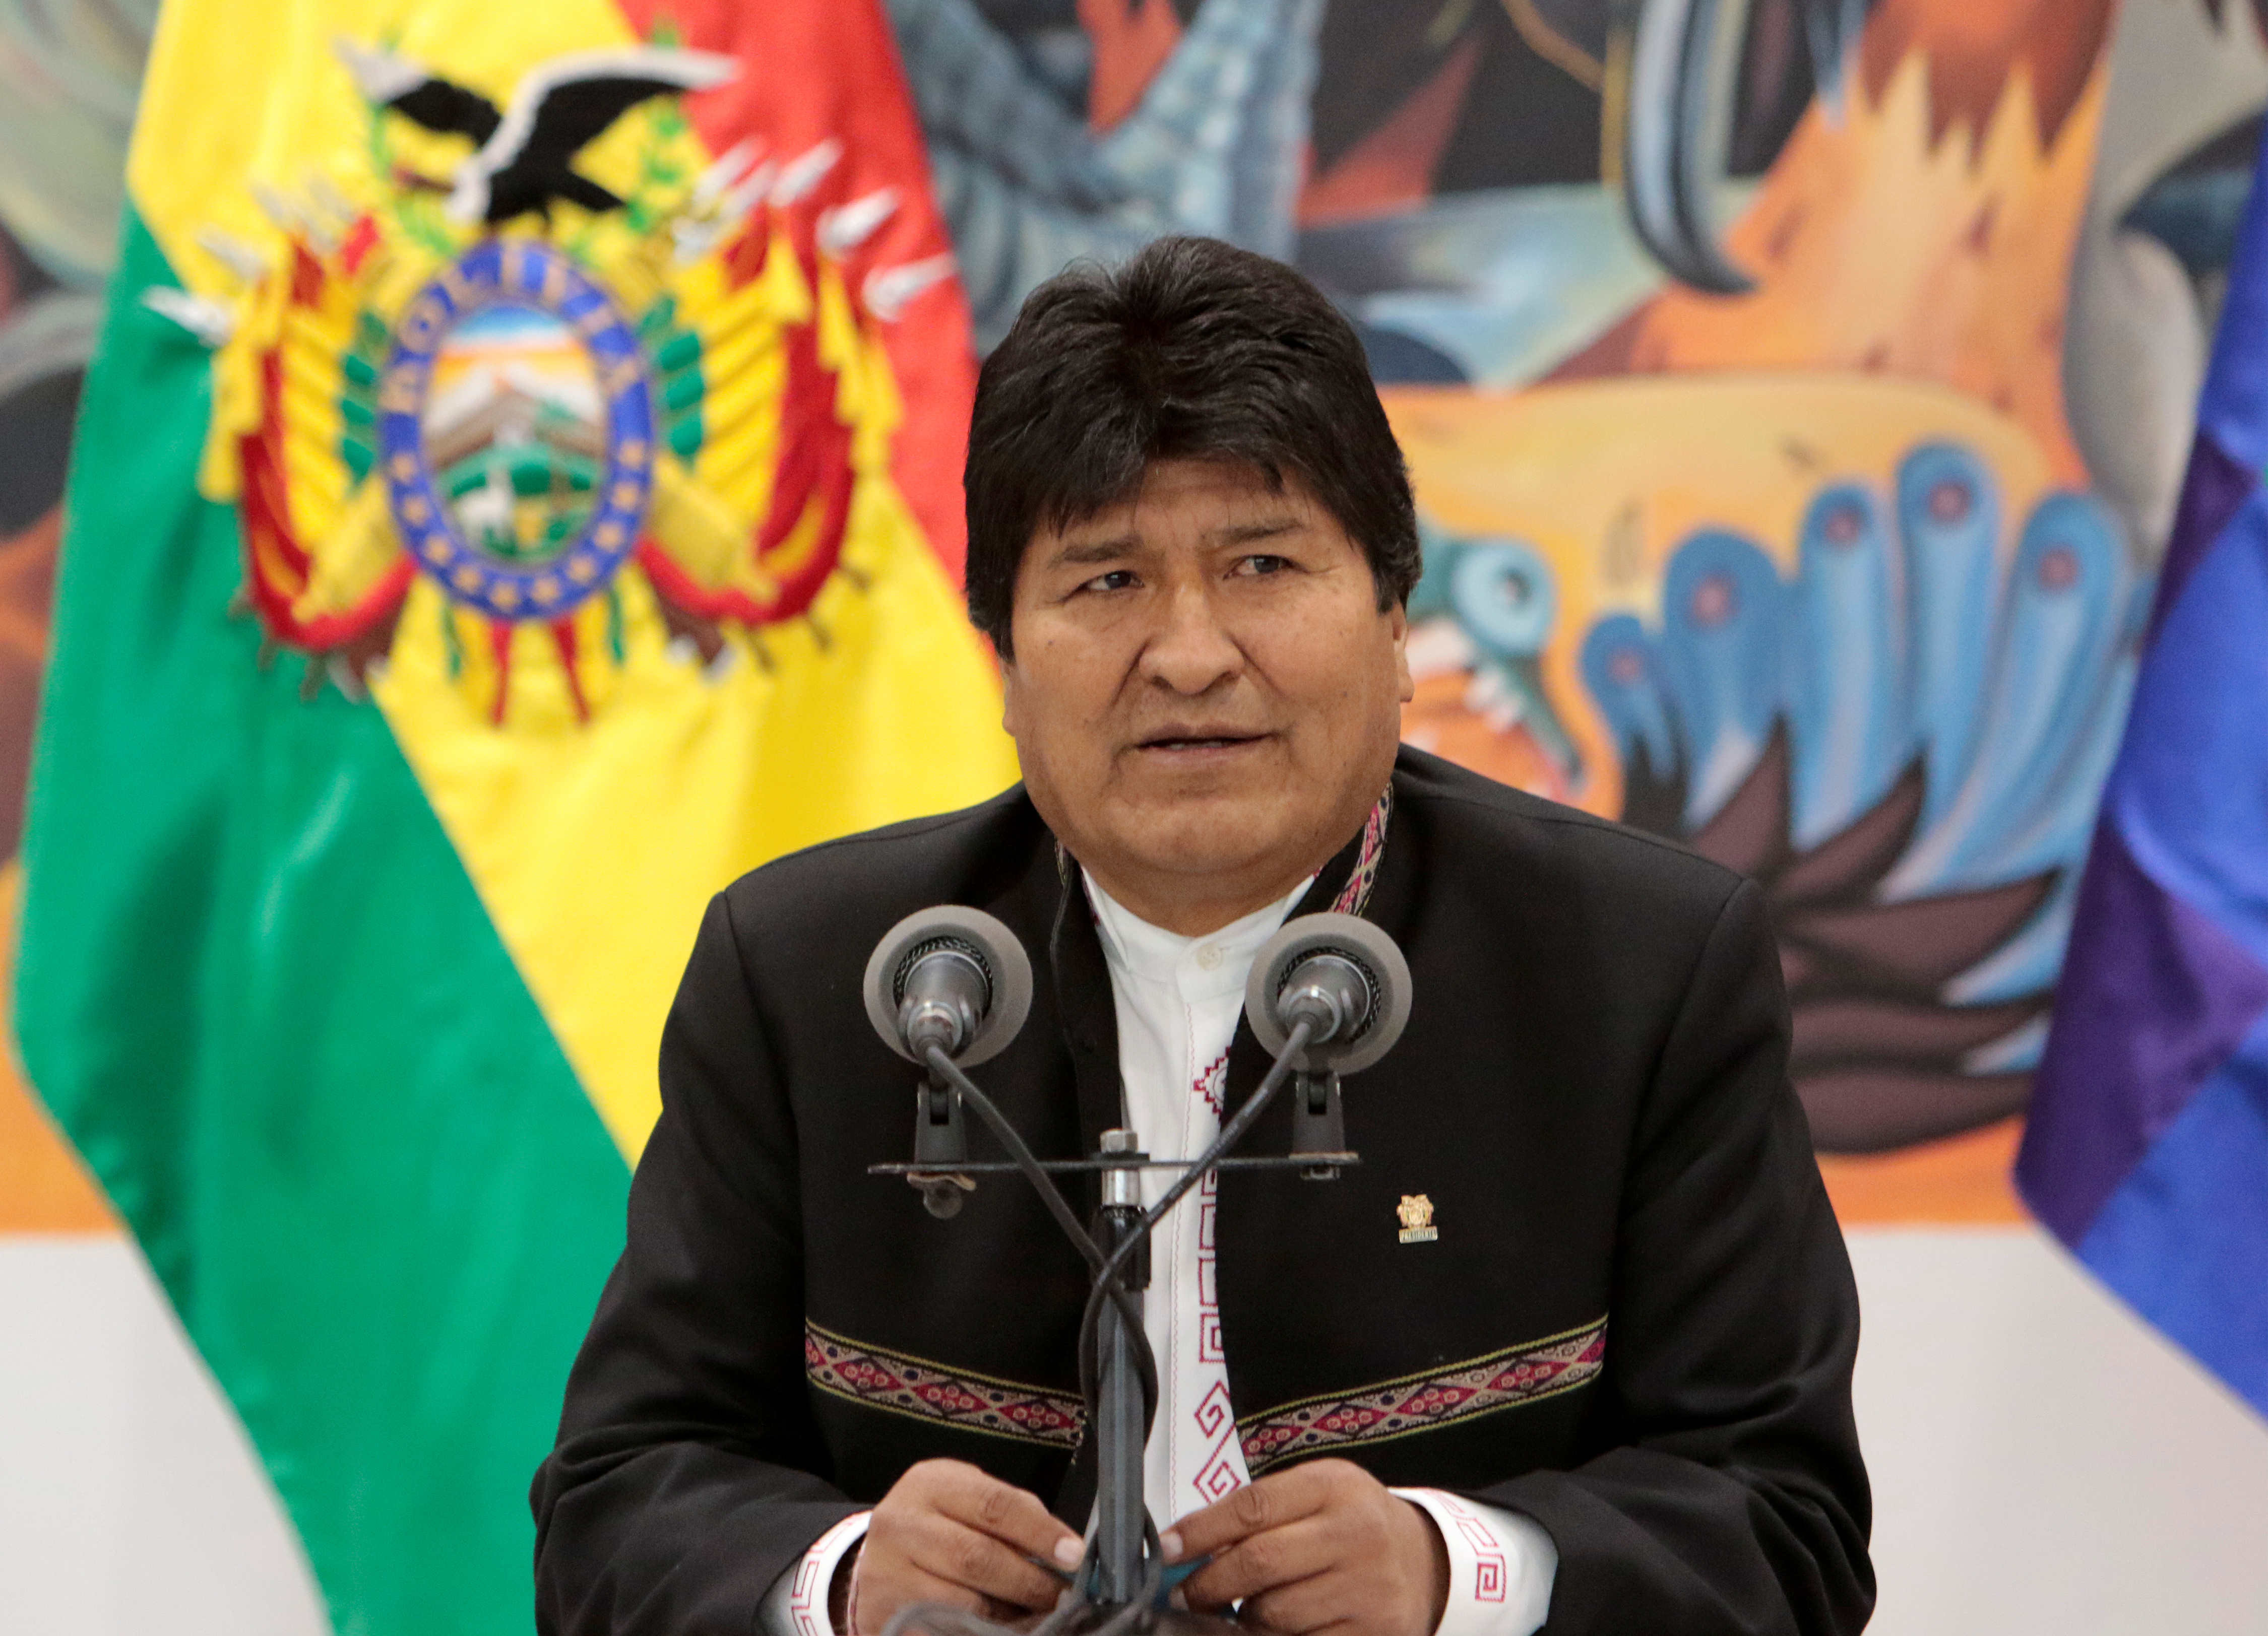 Εκλογές στη Βολιβία: Κοντά στη νίκη ο Μοράλες εν μέσω ταραχών [Pics]